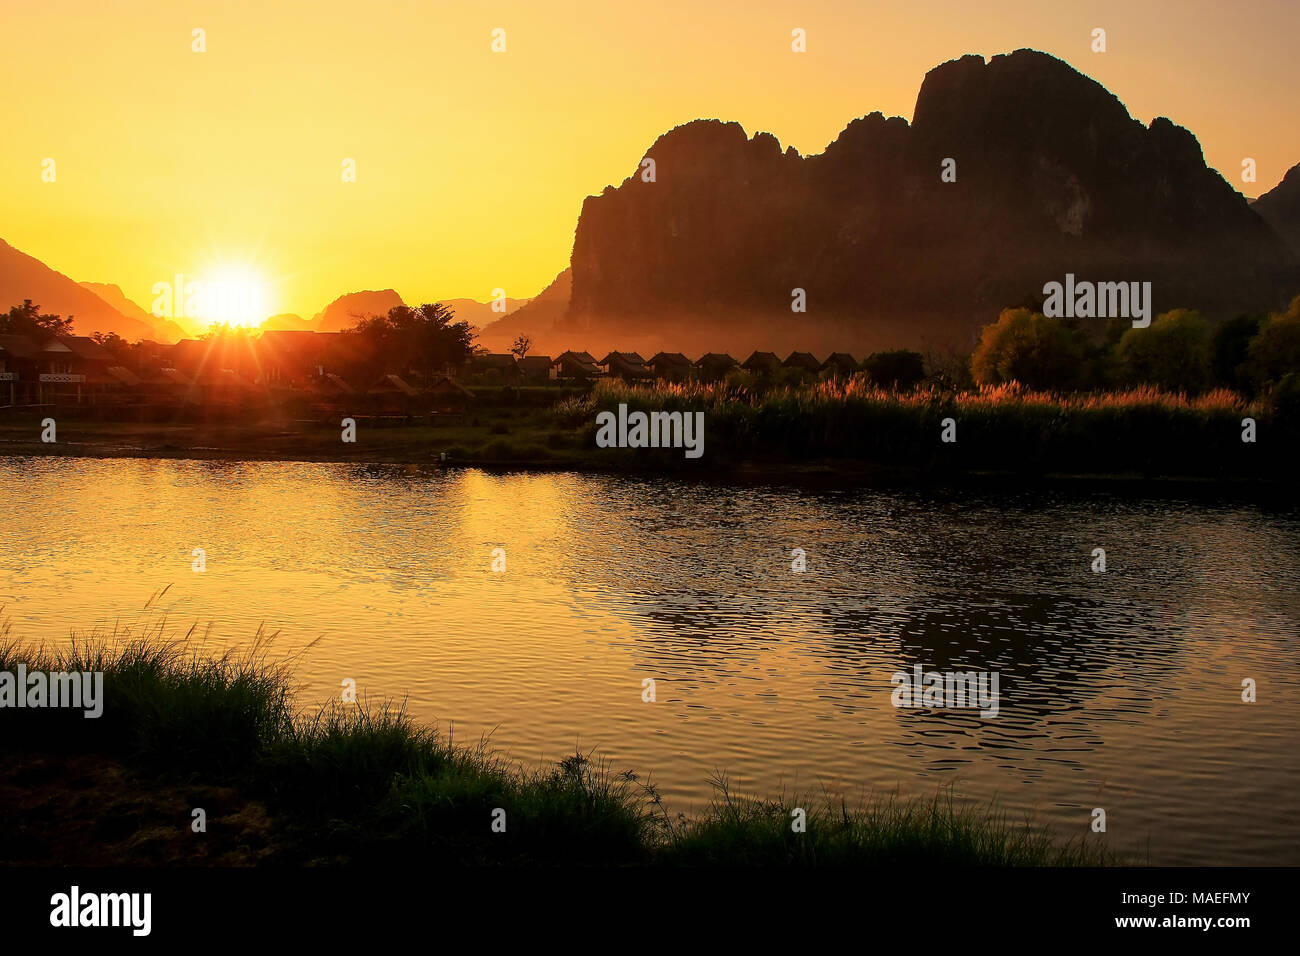 Sonnenuntergang über Nam Song River mit Silhouette Felsformationen in Vang Vieng, Laos. Vang Vieng ist ein beliebtes Reiseziel für Abenteuer-Tourismus in einer limest Stockfoto